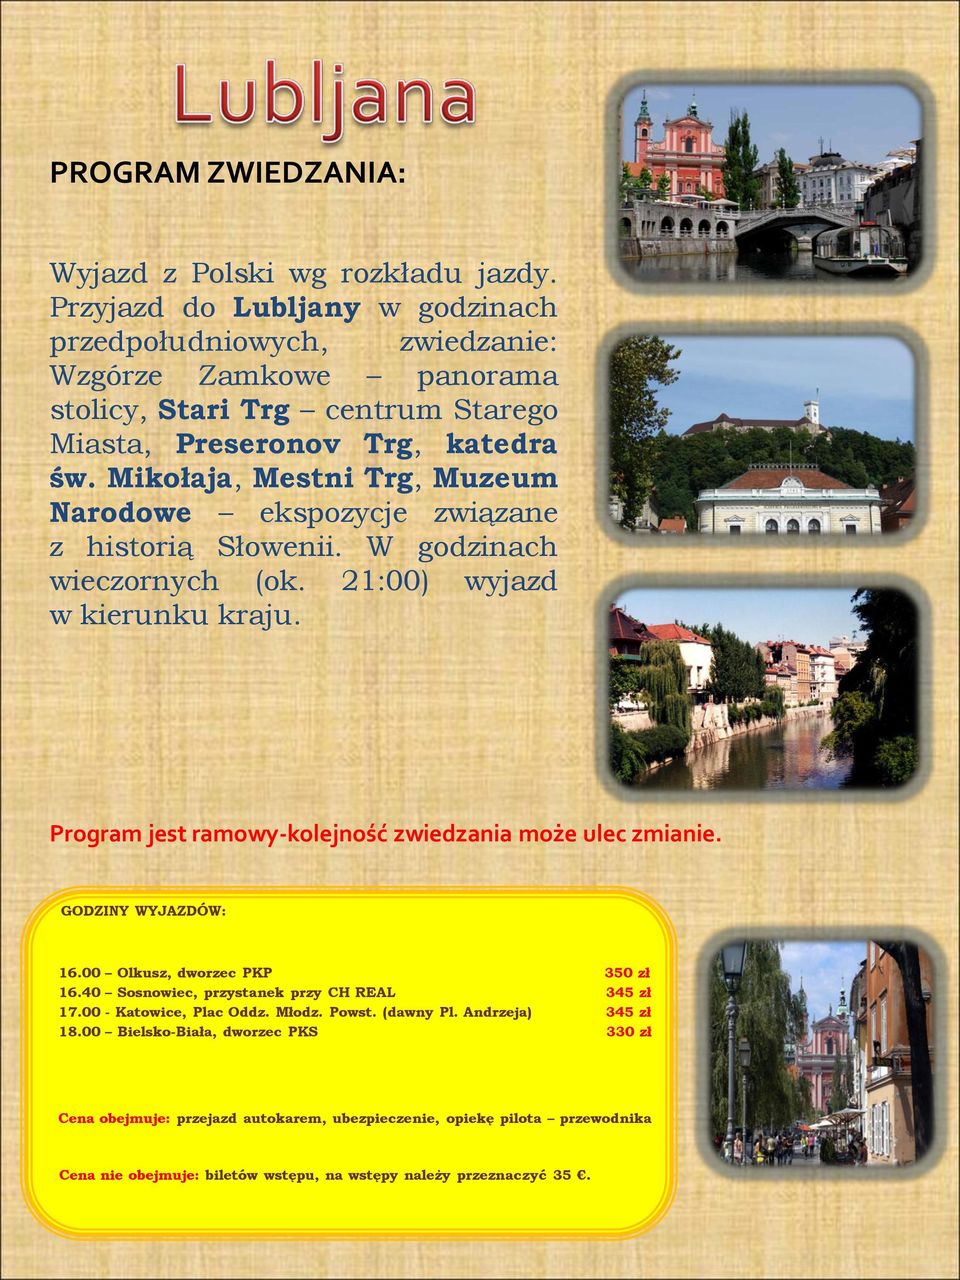 katedra św. Mikołaja, Mestni Trg, Muzeum Narodowe ekspozycje związane z historią Słowenii. W godzinach wieczornych (ok.